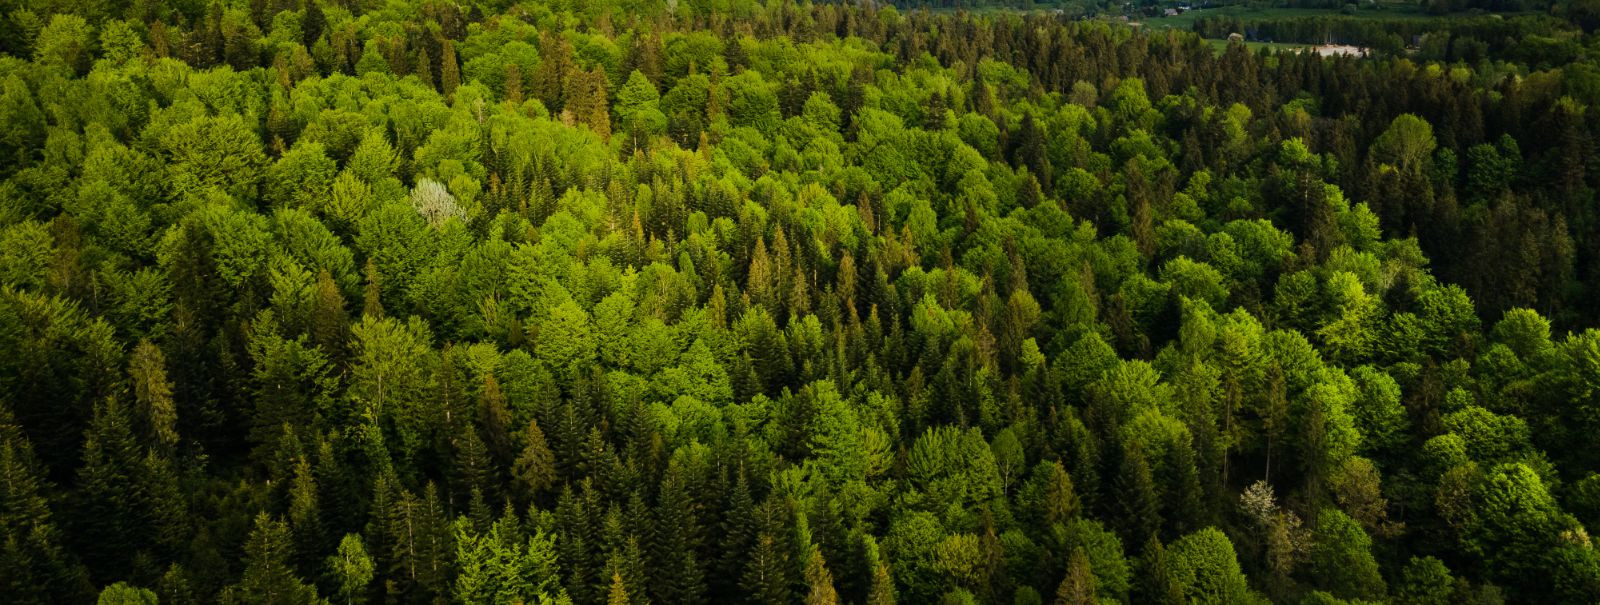 Jätkusuutlik metsandus on majandamisfilosoofia, mis tasakaalustab keskkonnakaitset, sotsiaalset vastutust ja majanduslikku elujõulisust. See tähendab meie praeg